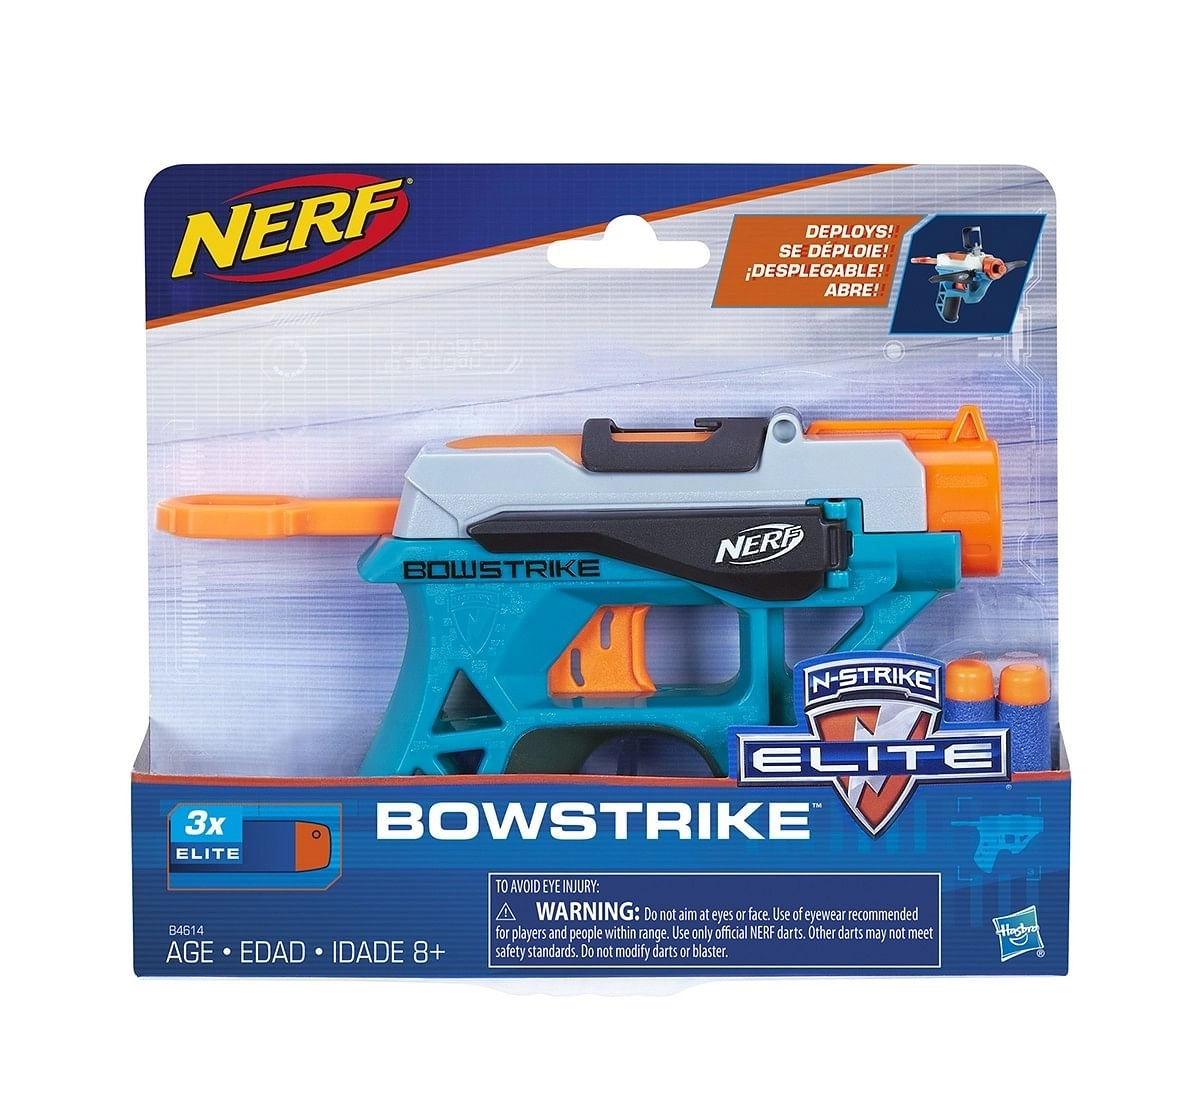 Nerf N-STRIKE BOWSTRIKE Blasters for age 8Y+ 